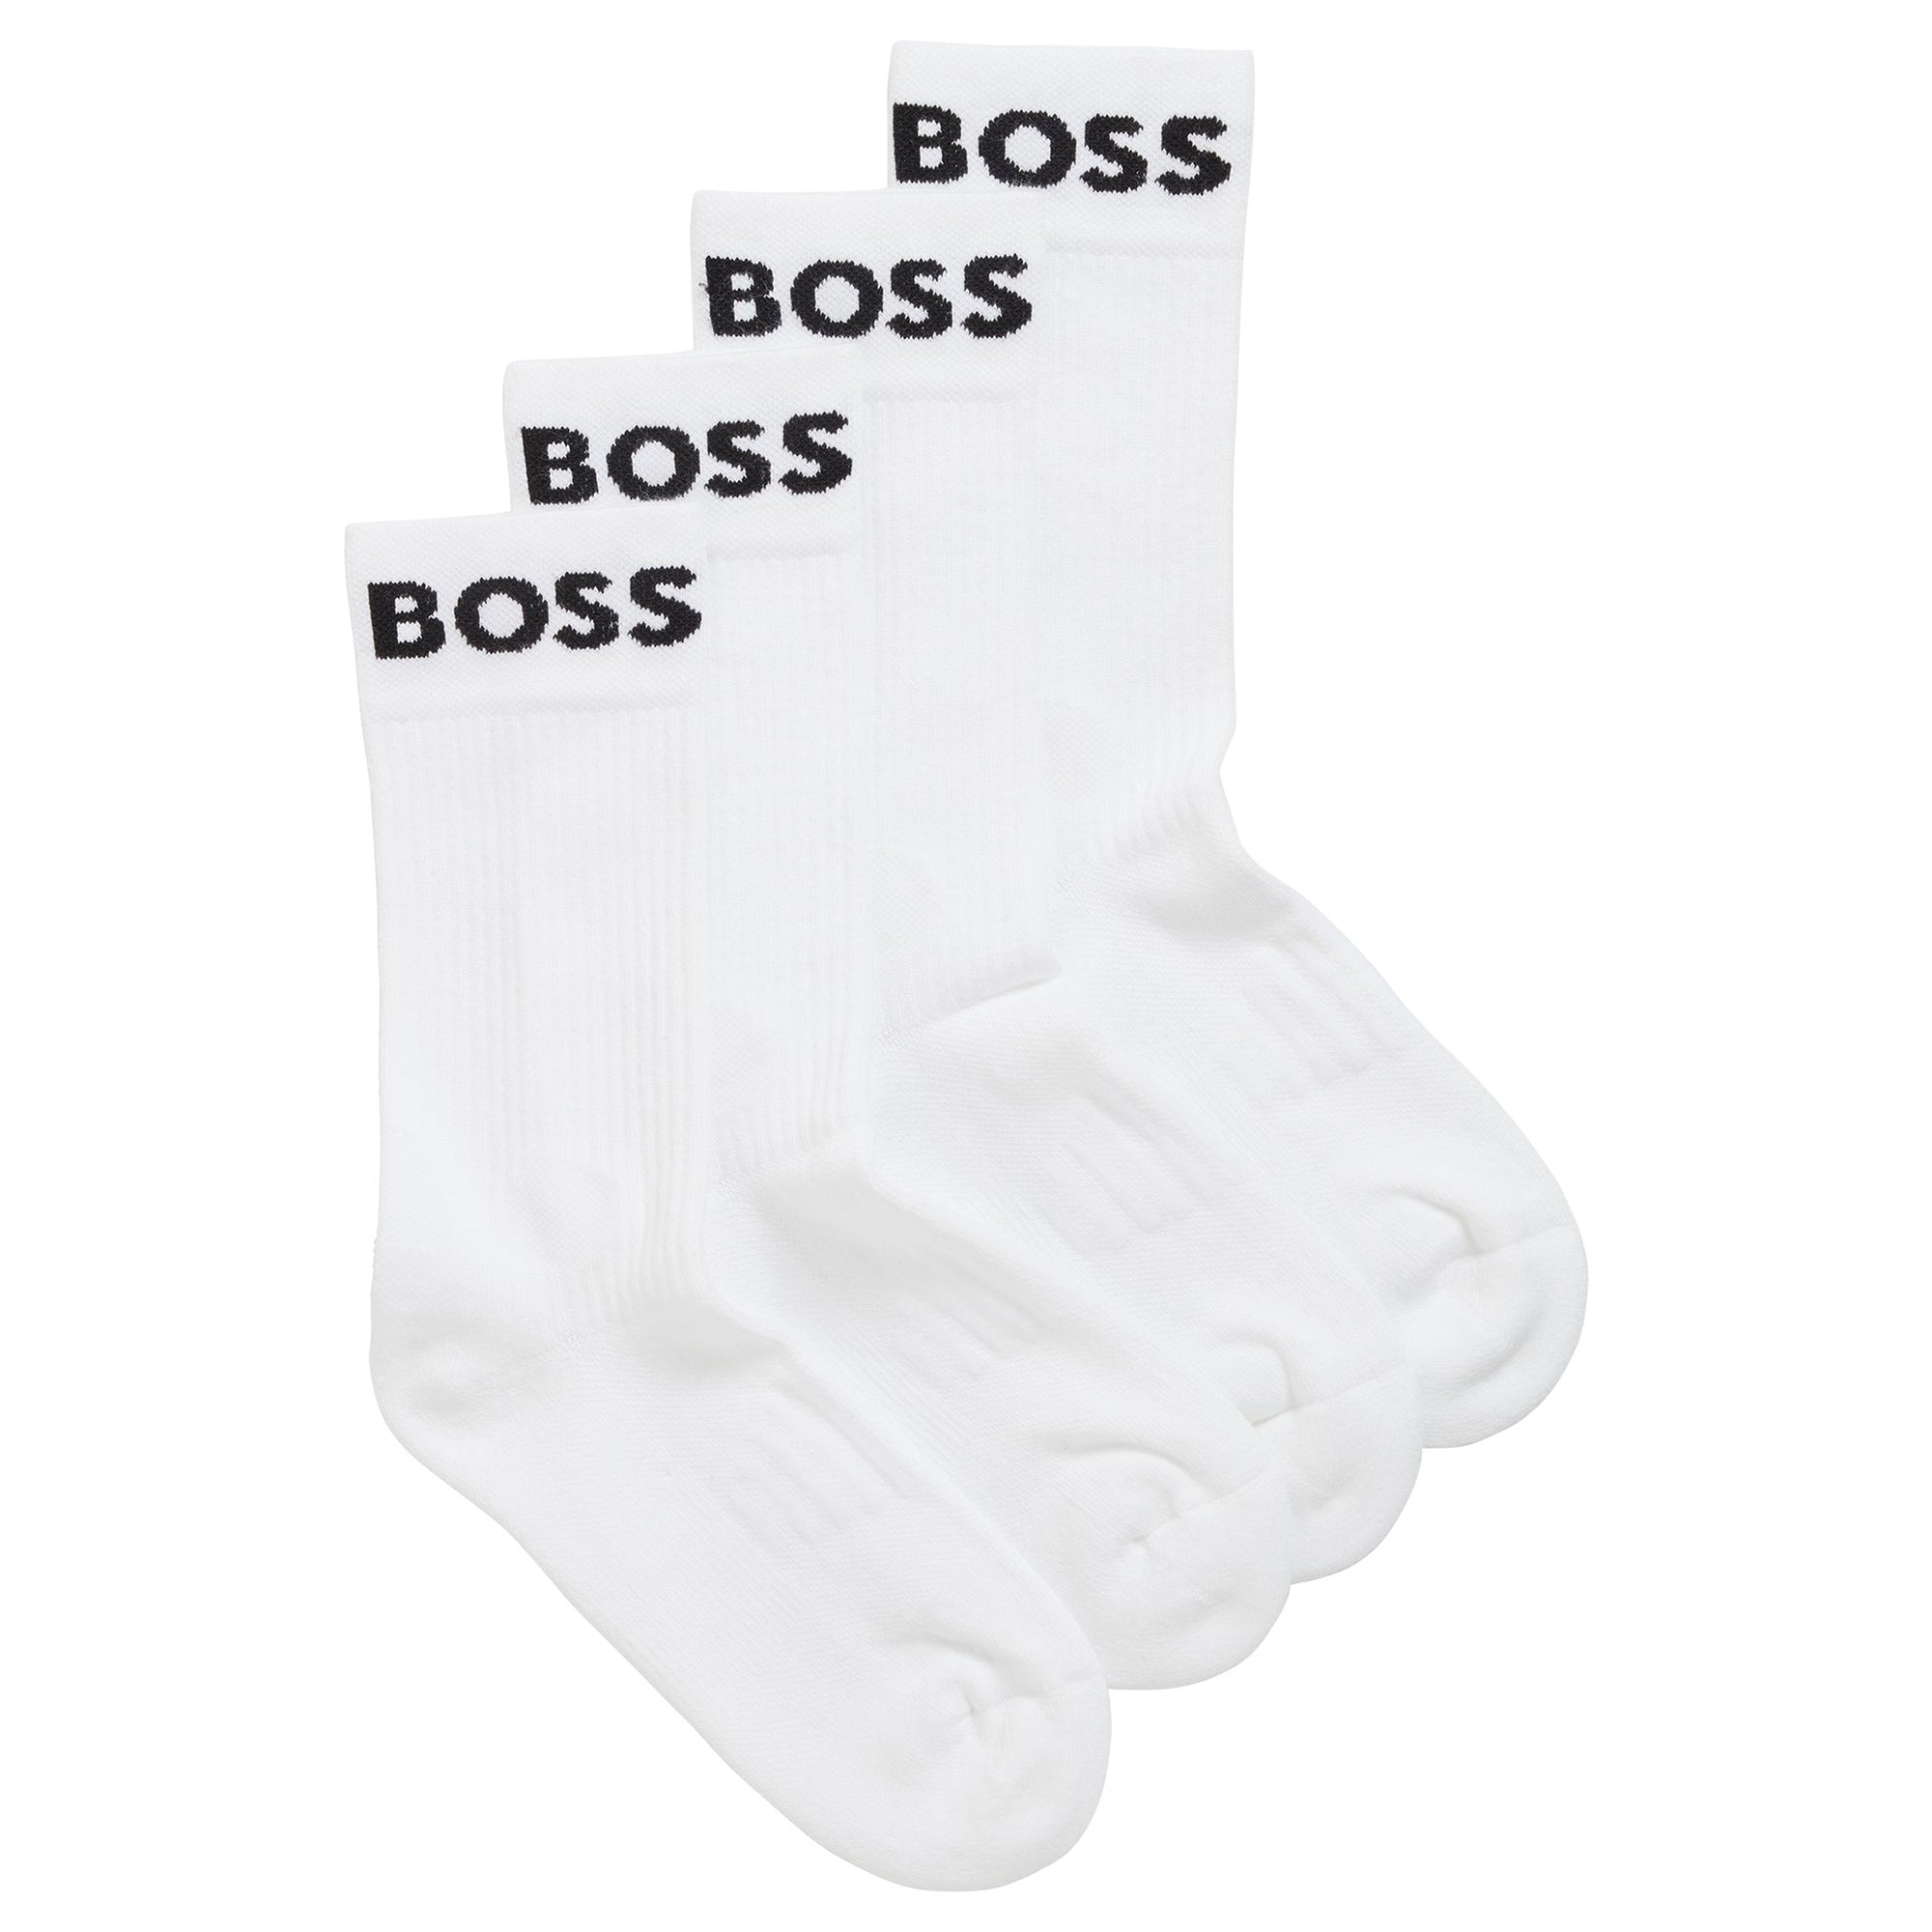 Boss 2 Pack RS Sport Socks - White/White